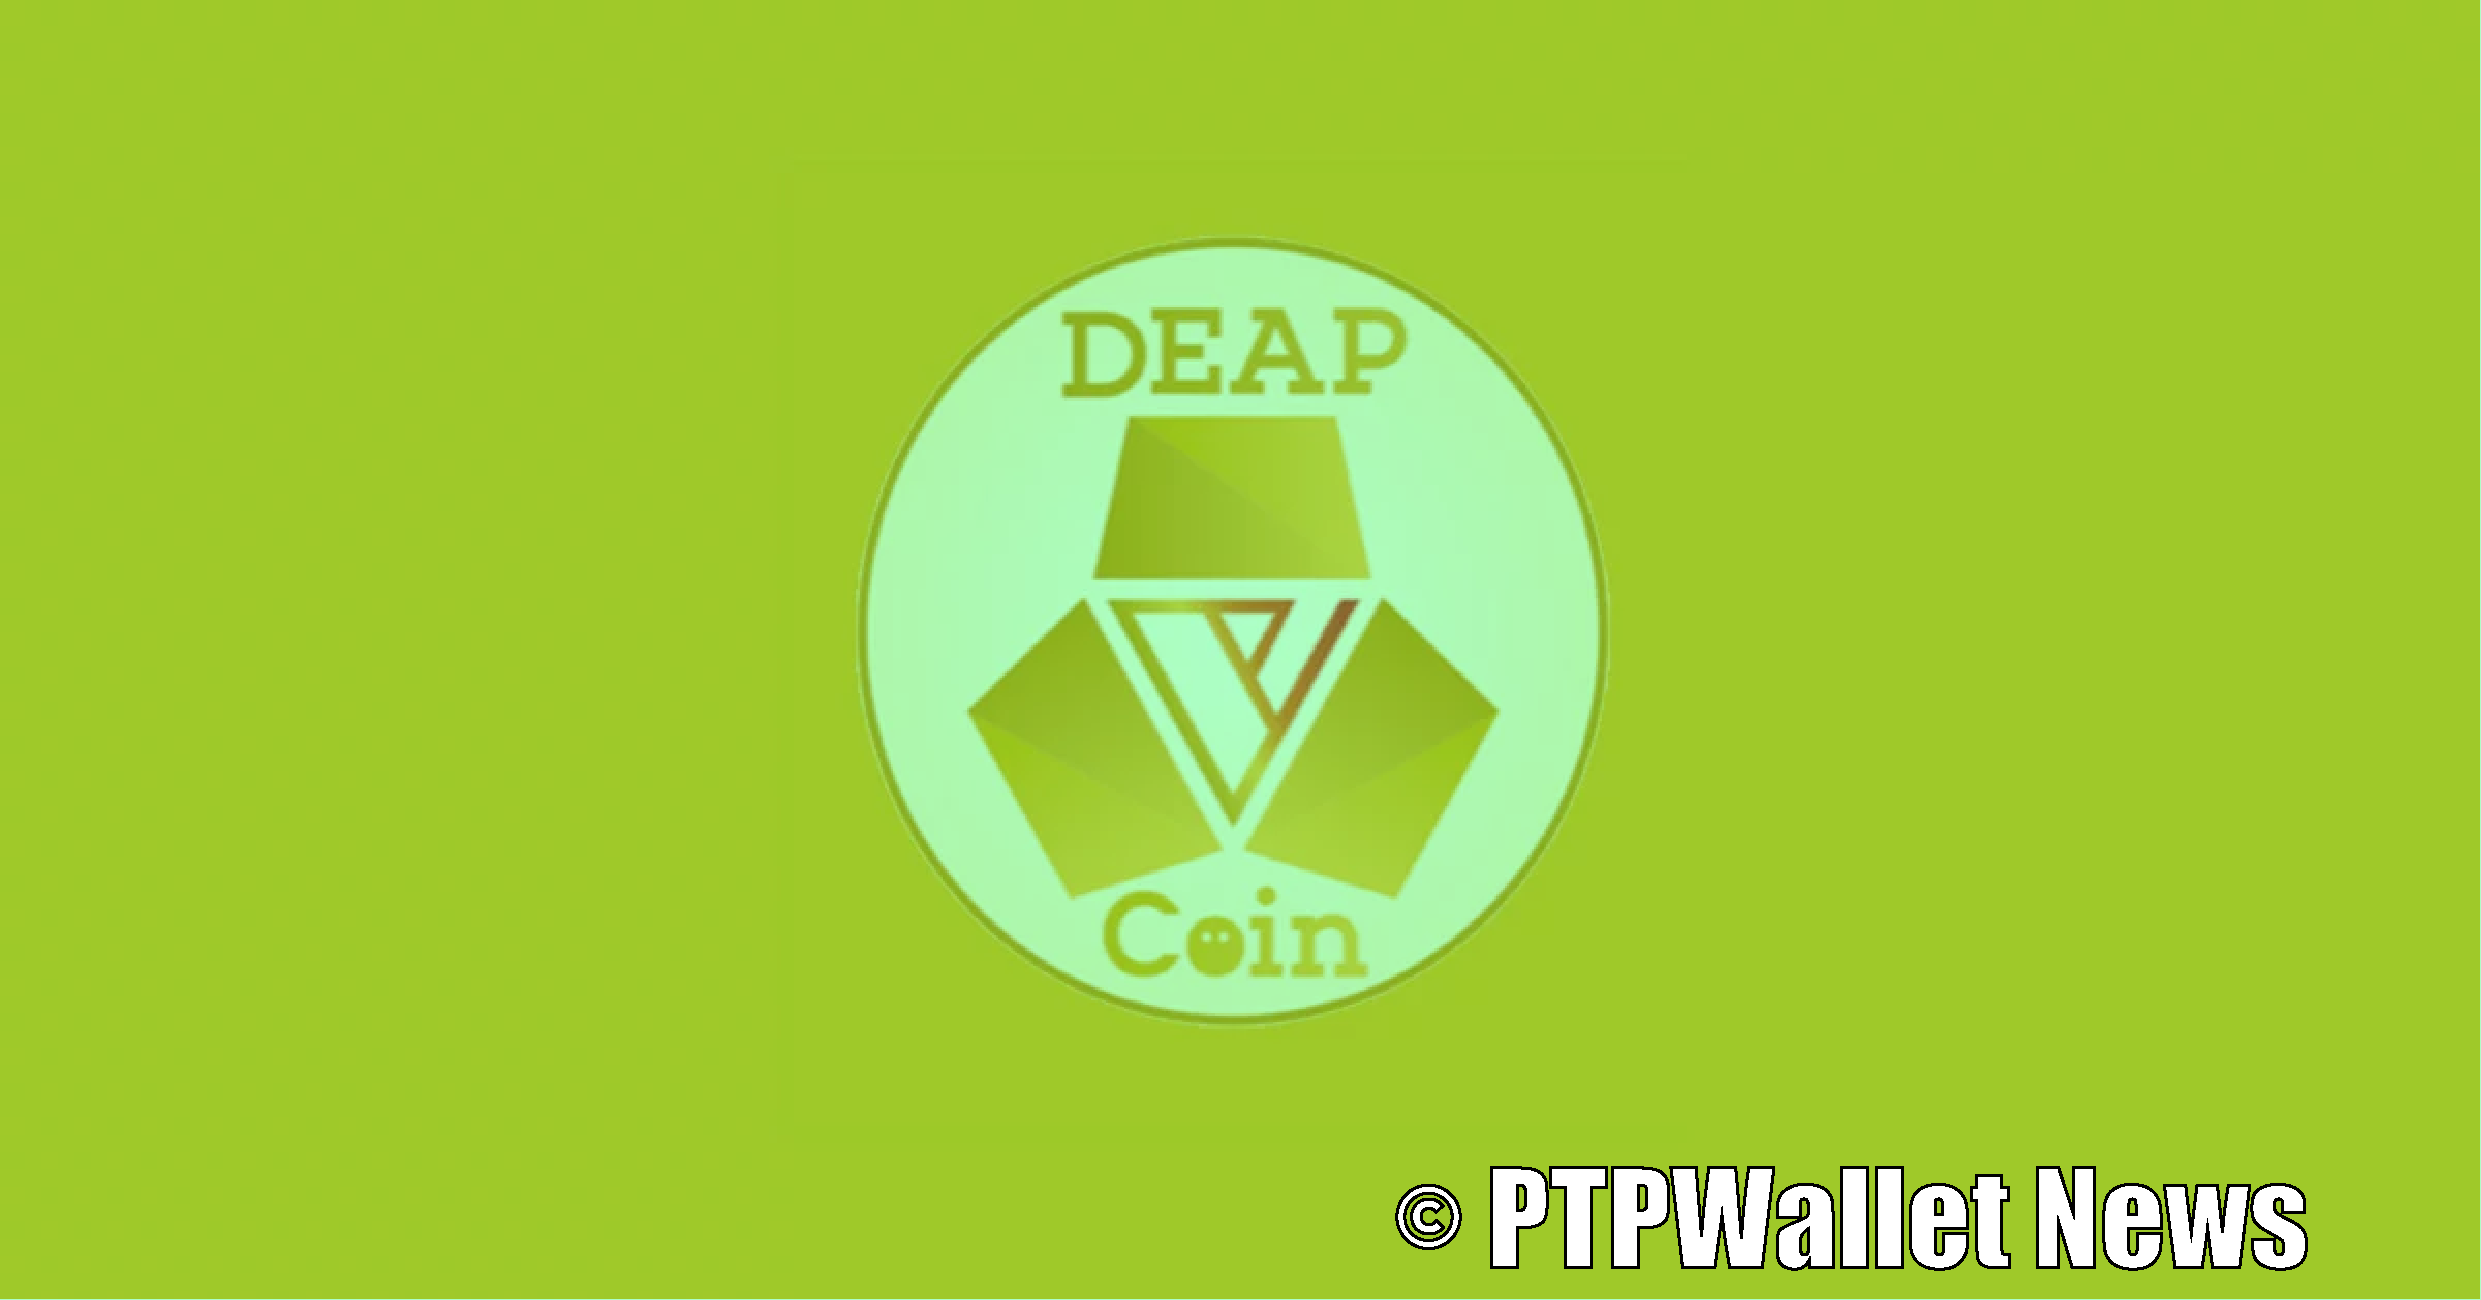 DeapCoin crypto token